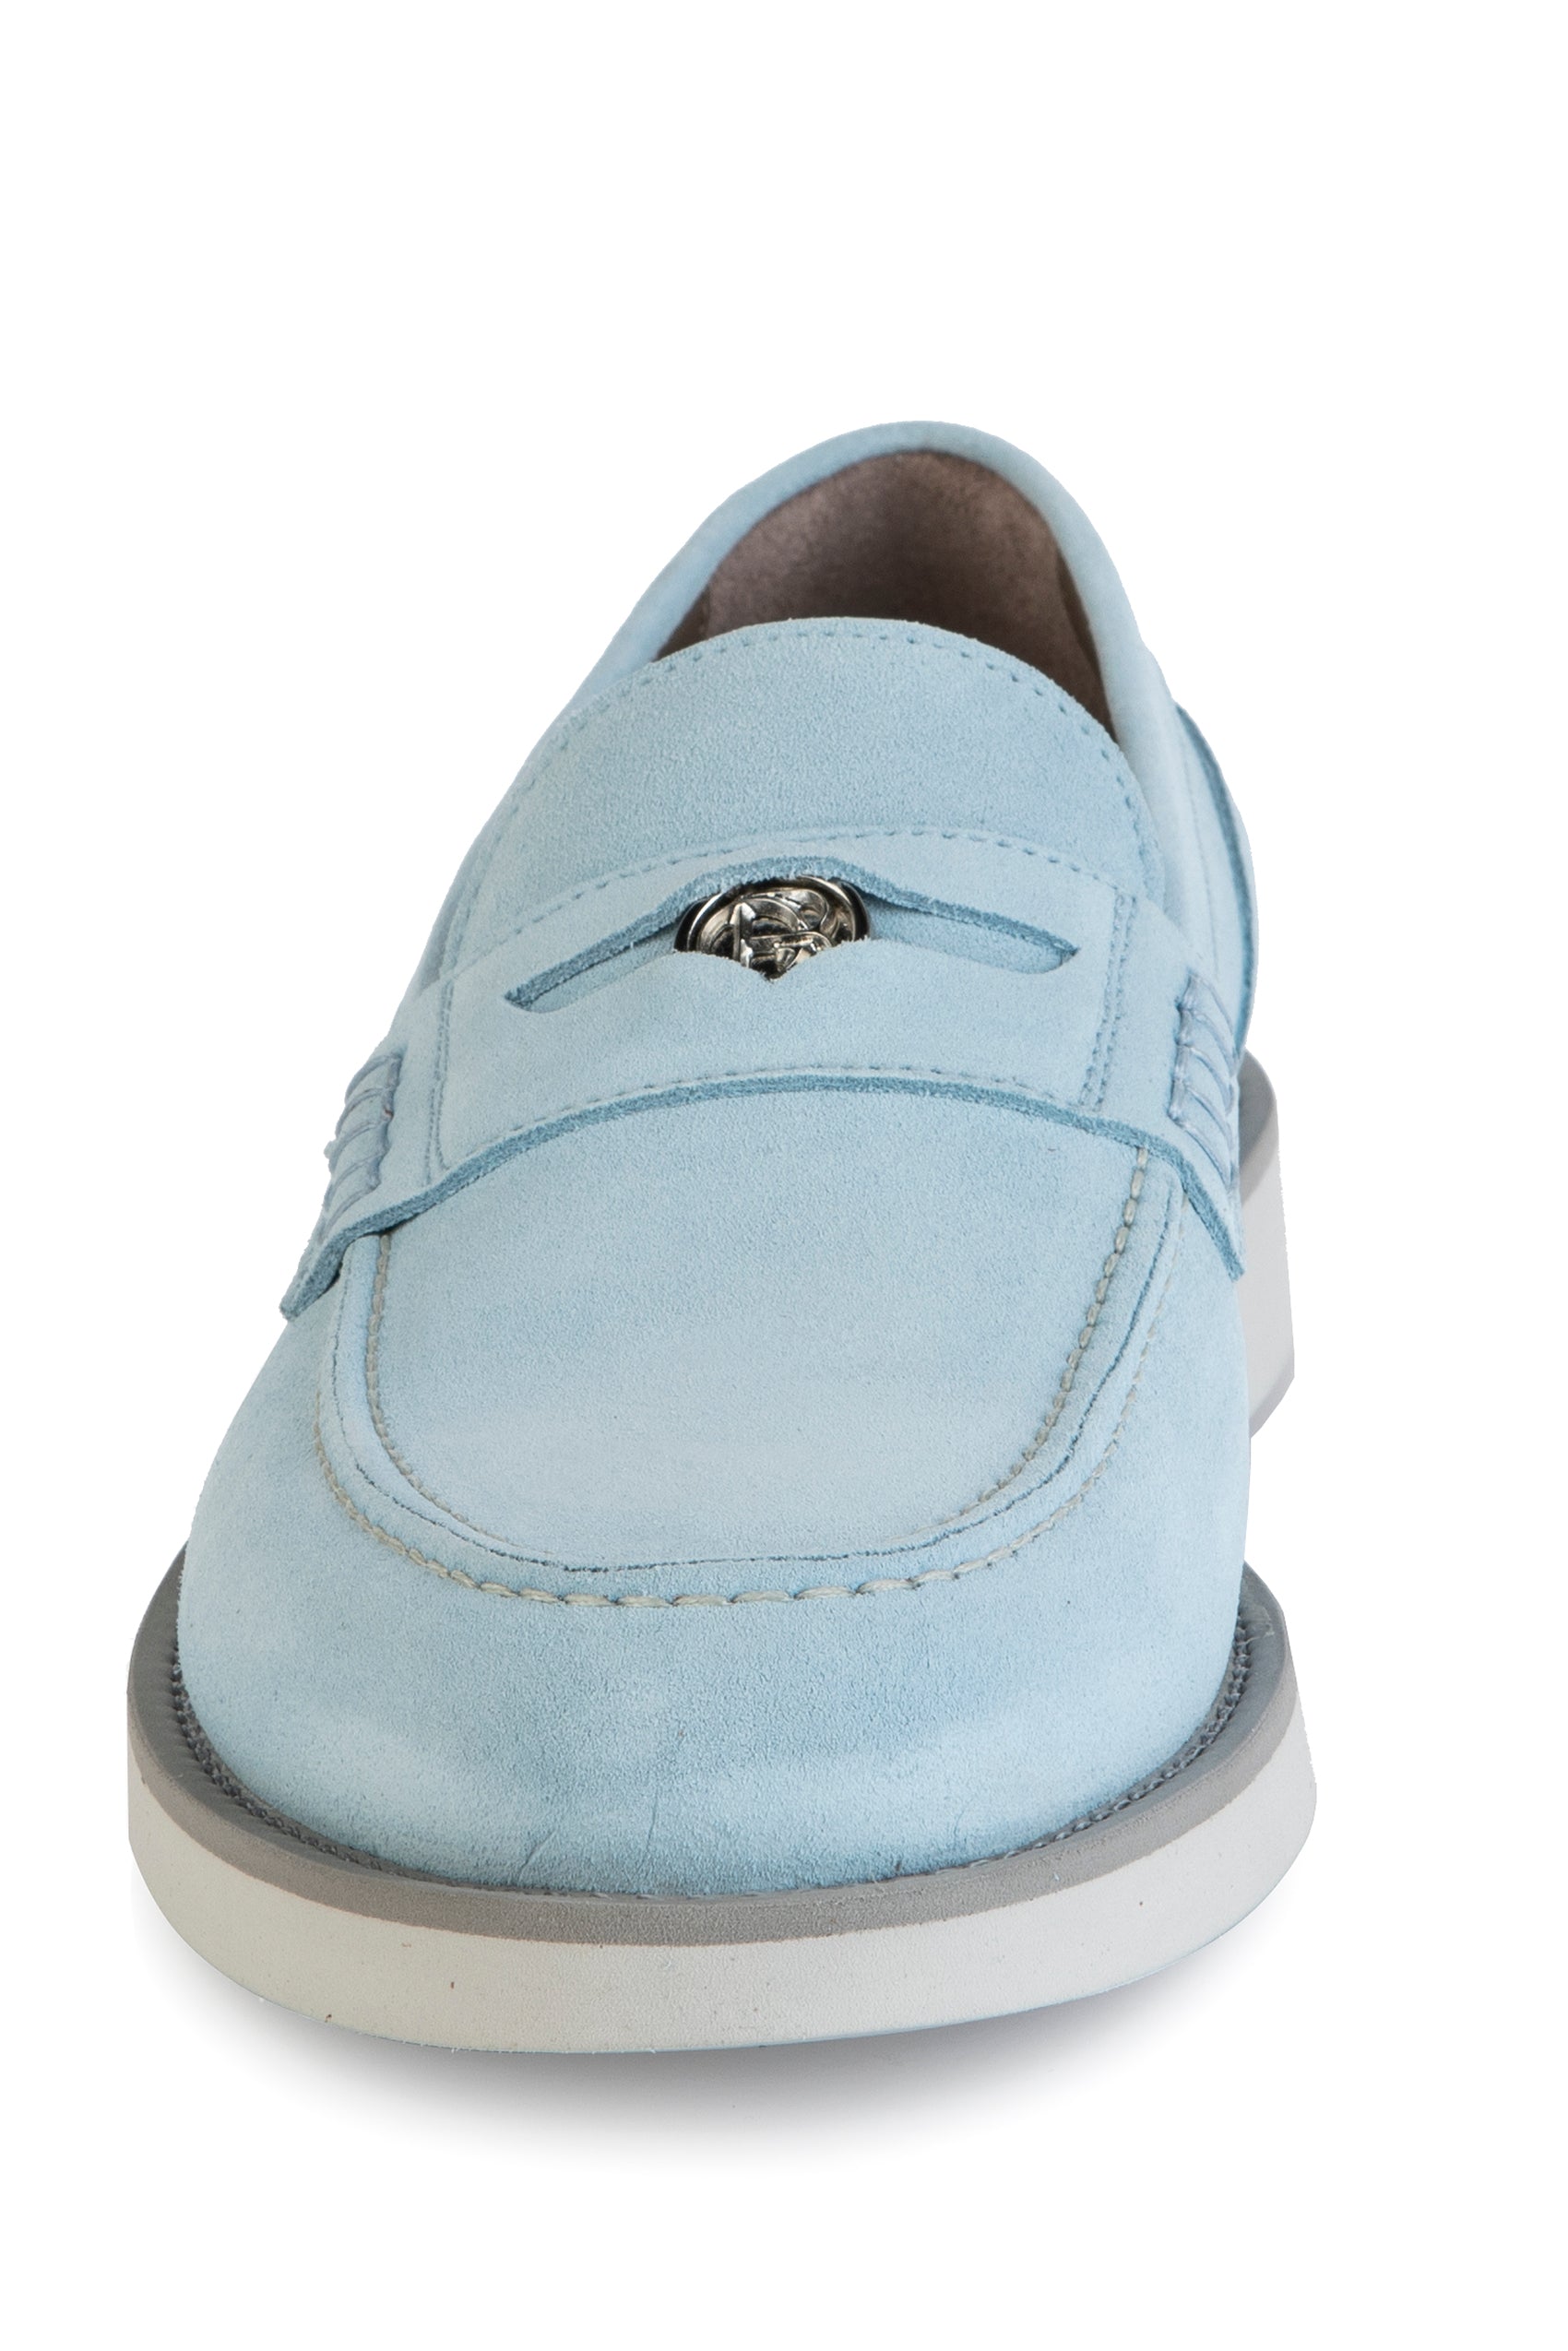 8503 Baldinini Shoes / Blue